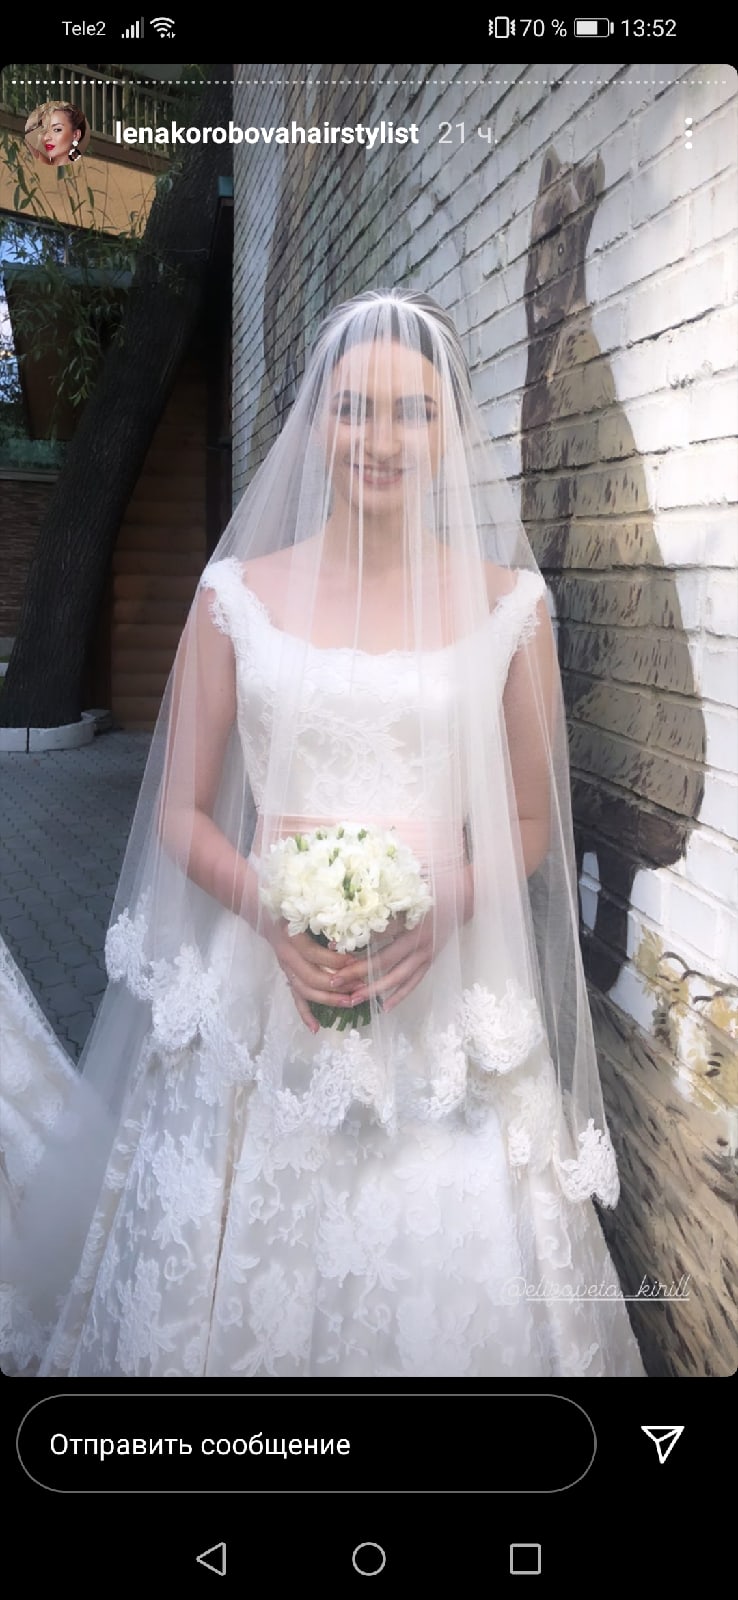 В сети появились фото со свадьбы внучки олигарха Аристова